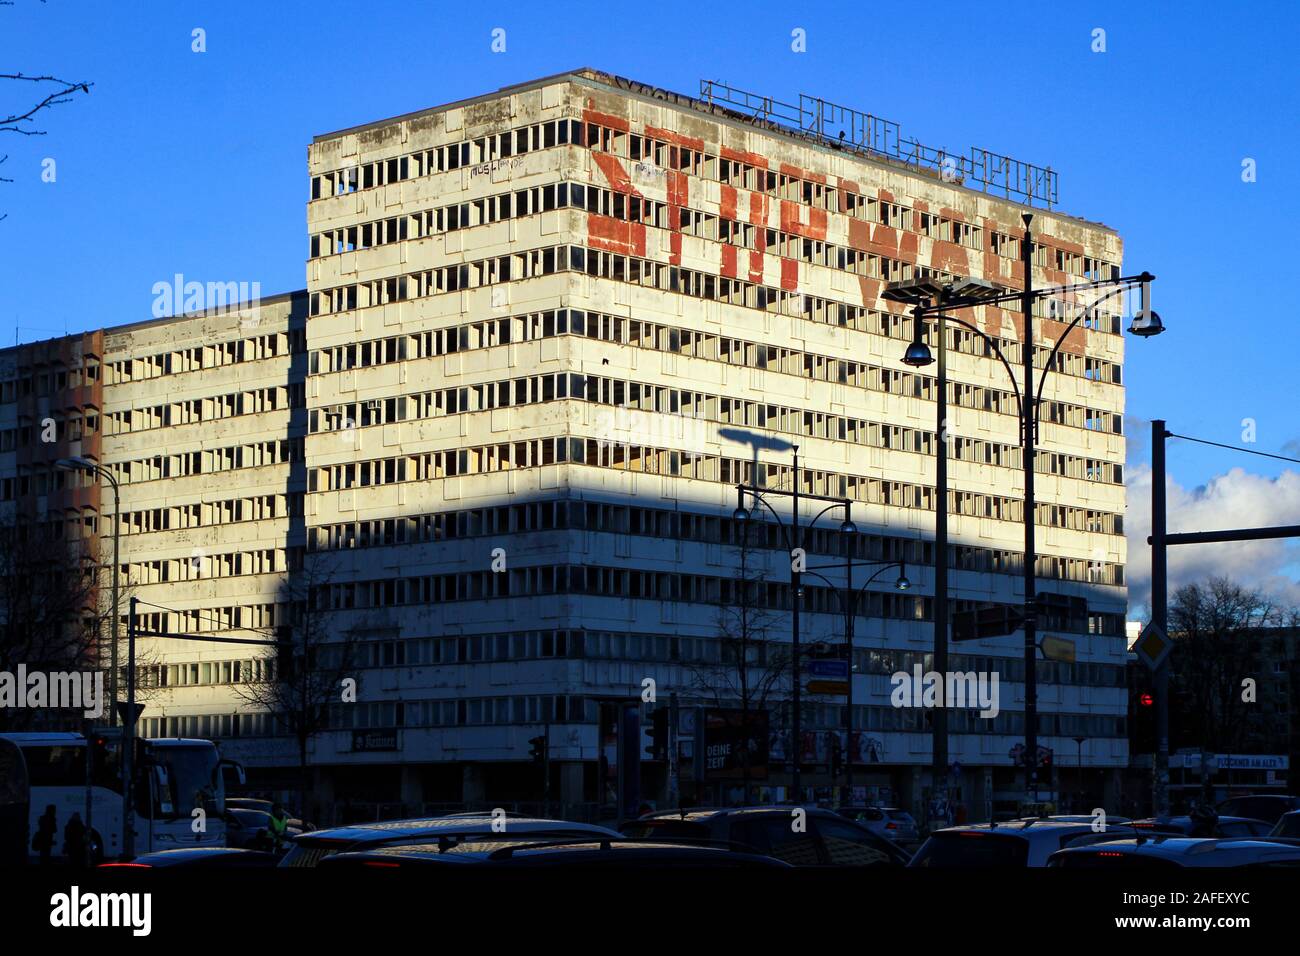 Haus des Statistik, un immeuble de bureaux de l'époque de DDR, soleil du soir par l'Alexanderplatz à Berlin, Allemagne Banque D'Images